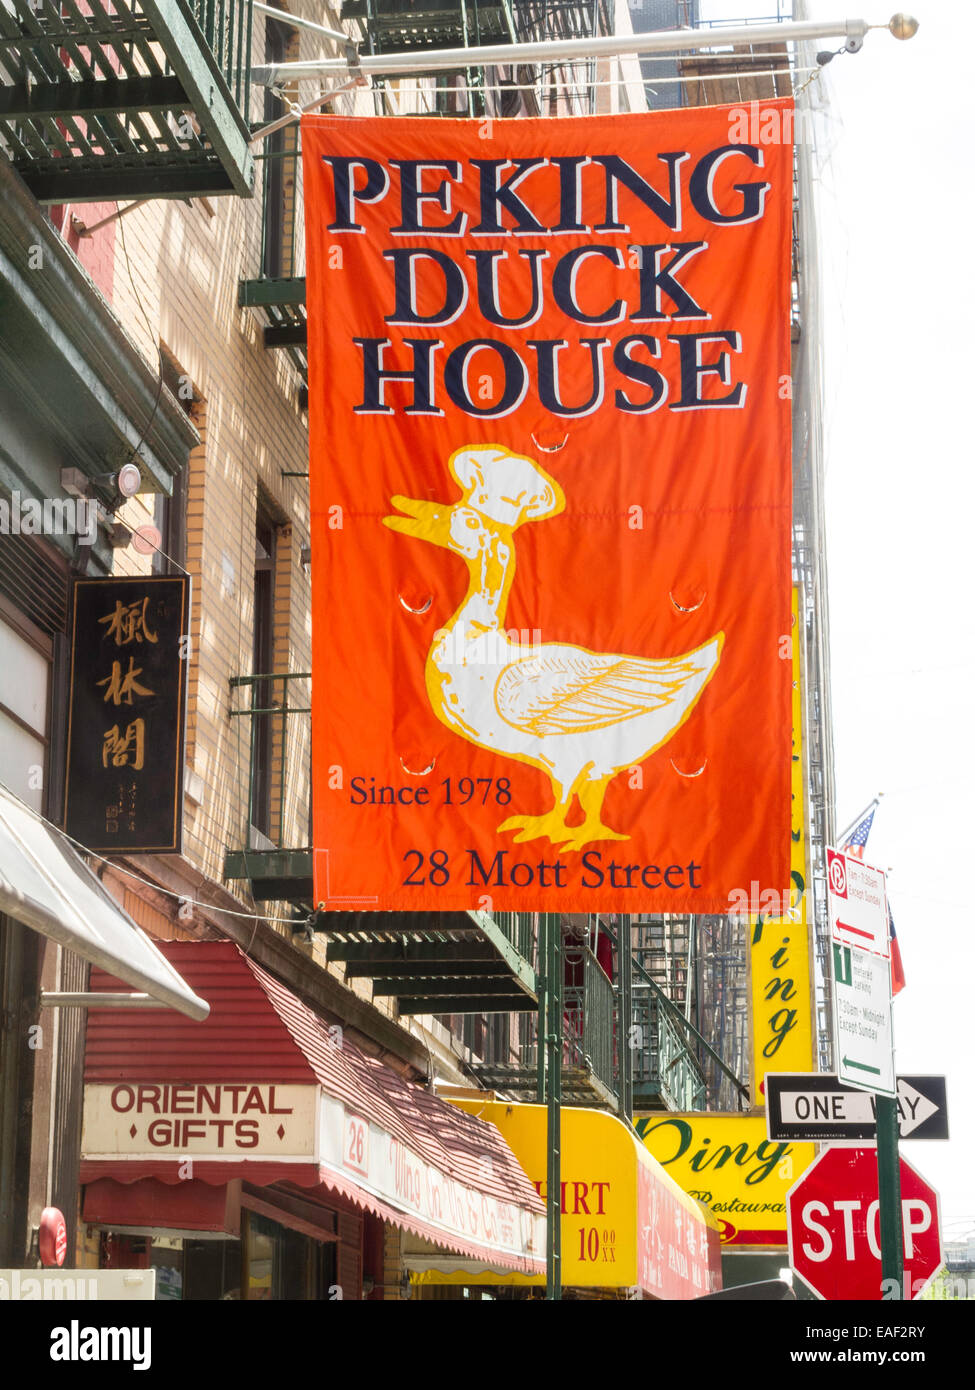 Peking Duck House Restaurant Banner, Chinatown, NYC Stock Photo - Alamy